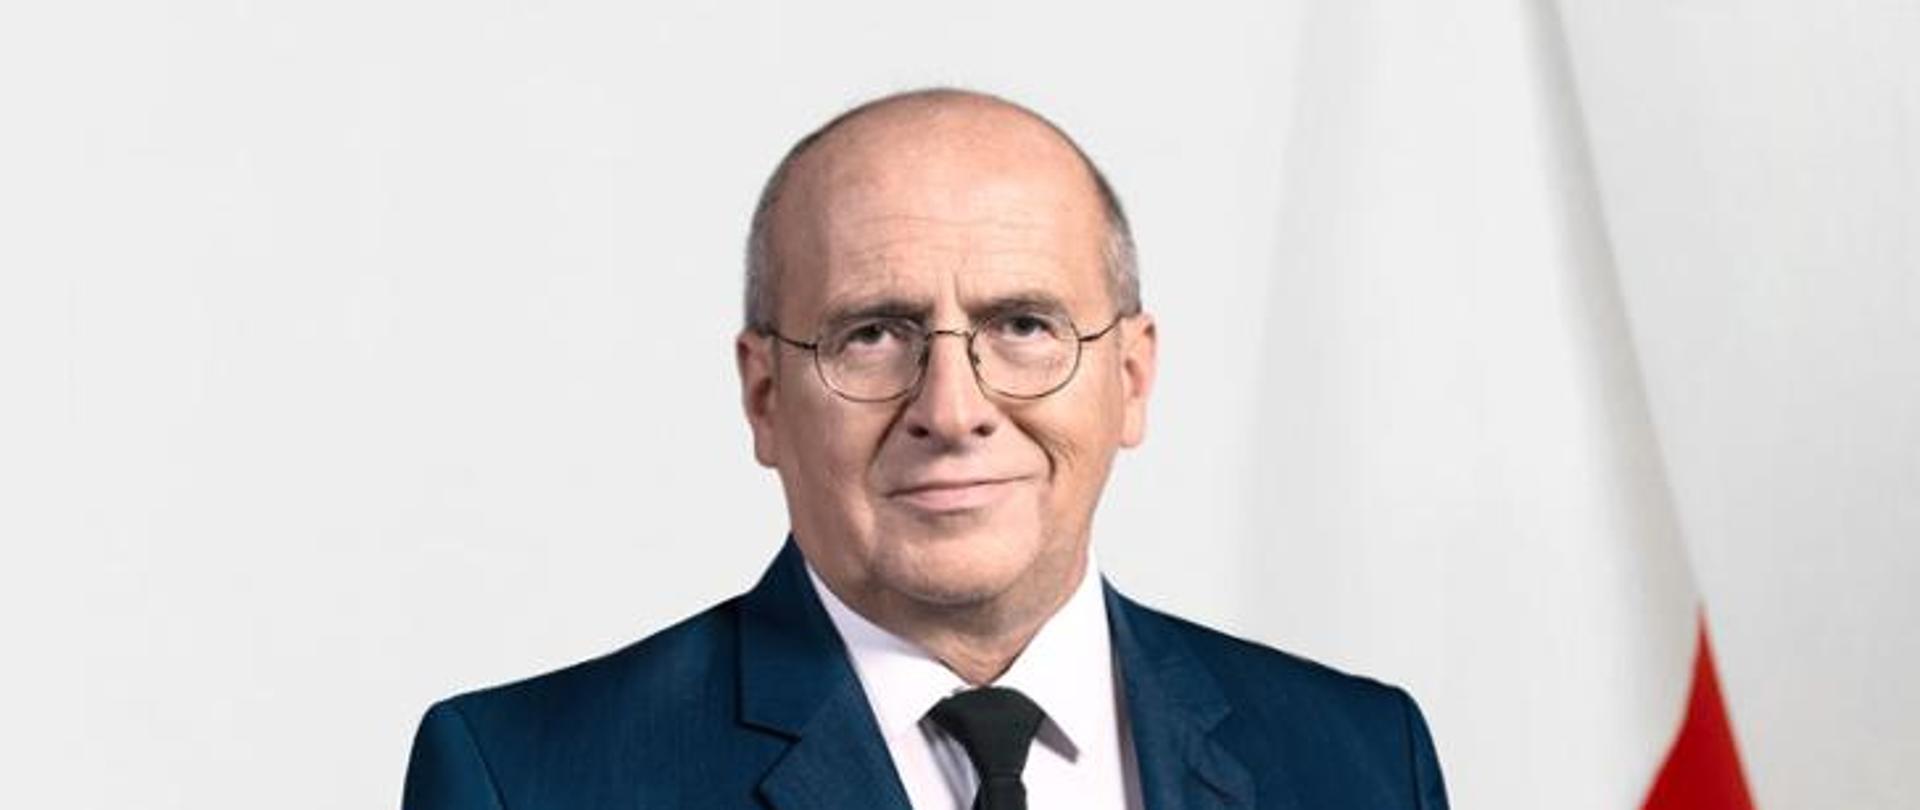 Minister Spraw Zagranicznych Zbigniew Rau